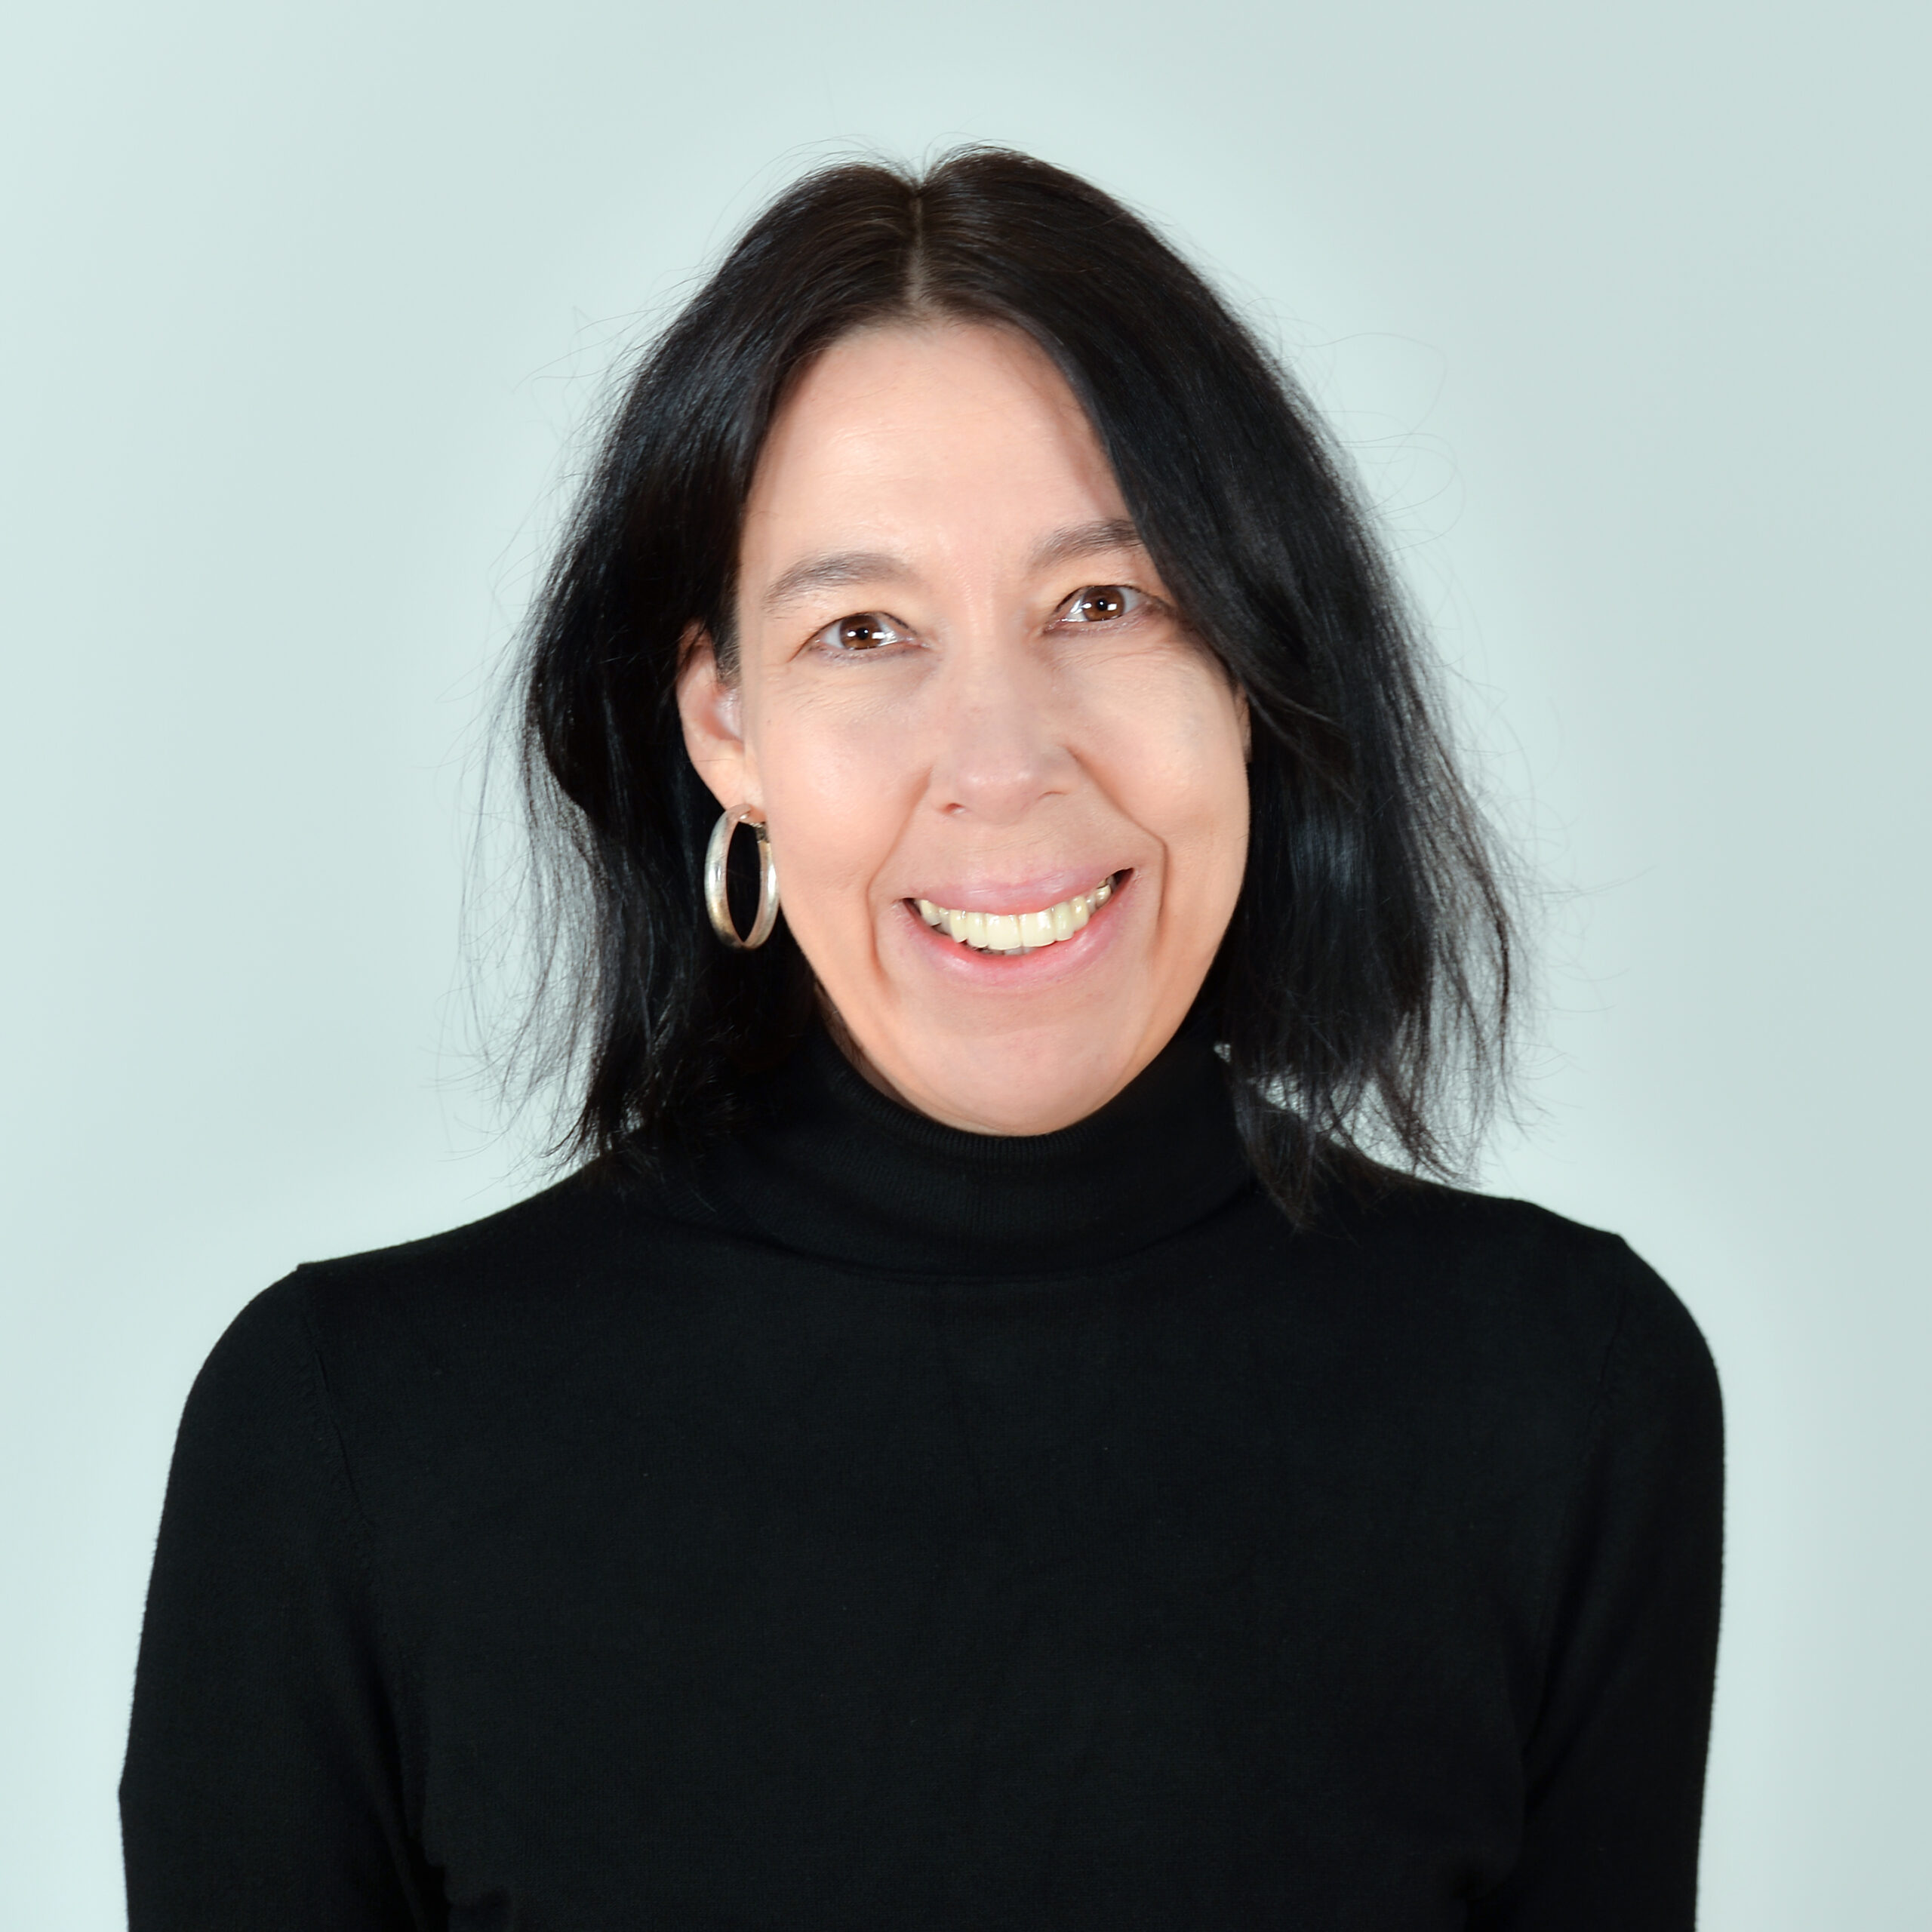 Profilbild von Dr. Britta Pohlmann in einem schwarzen Rollkragenpullover.